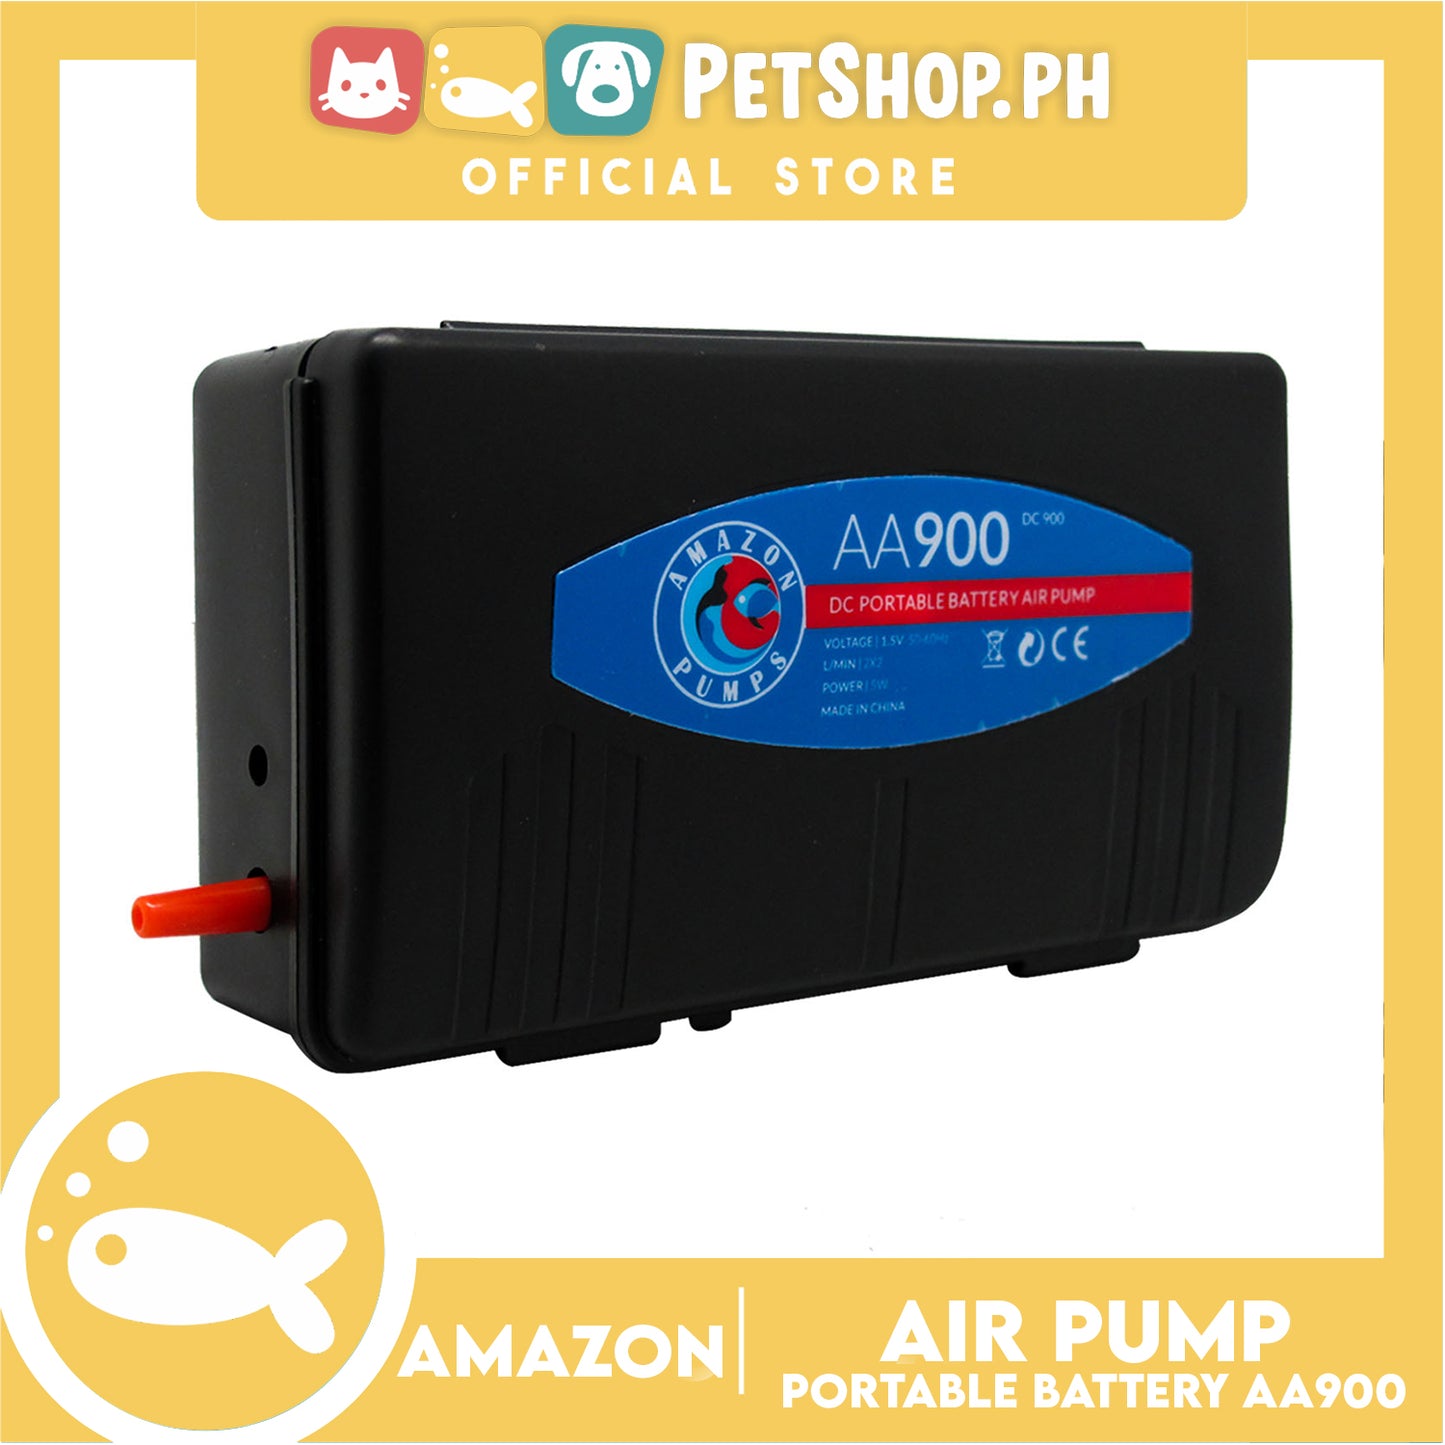 Portable Battery Air Pump AA-900